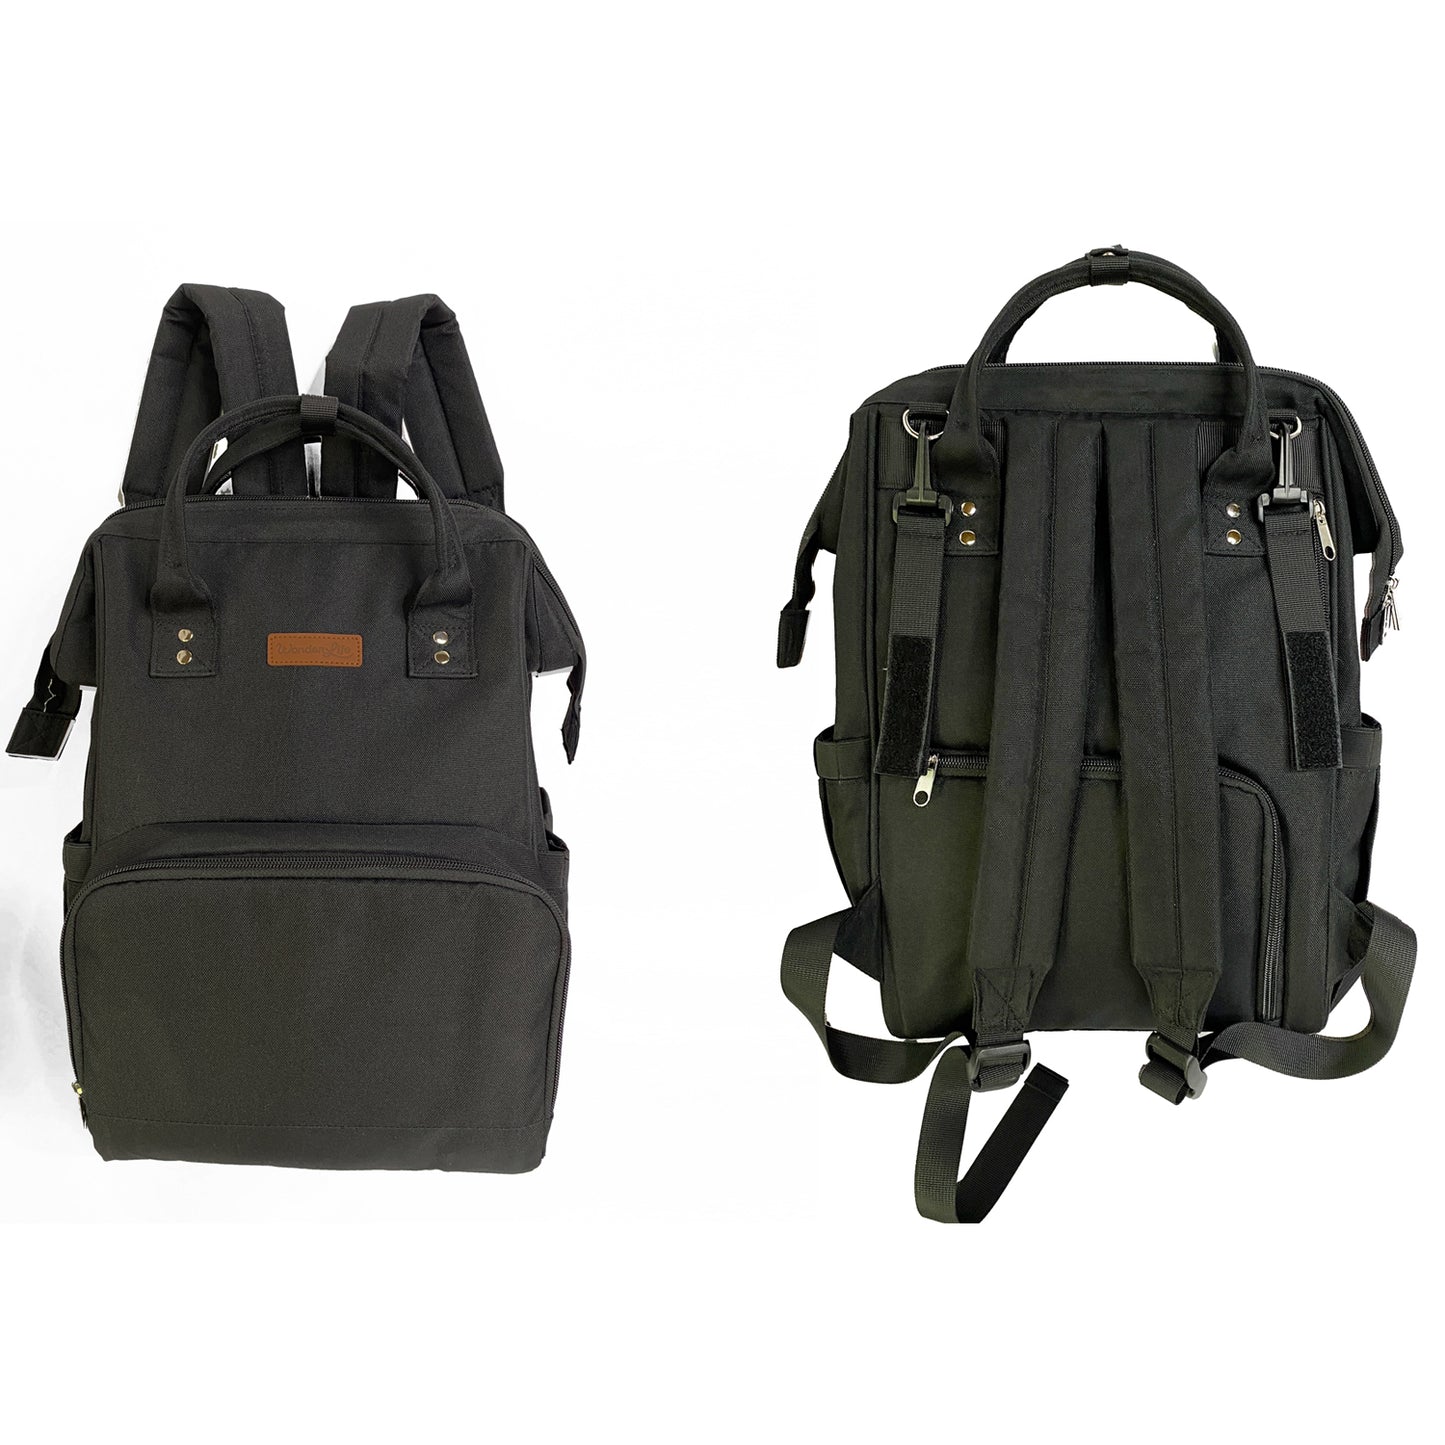 Wonderlife - Backpack Backpack